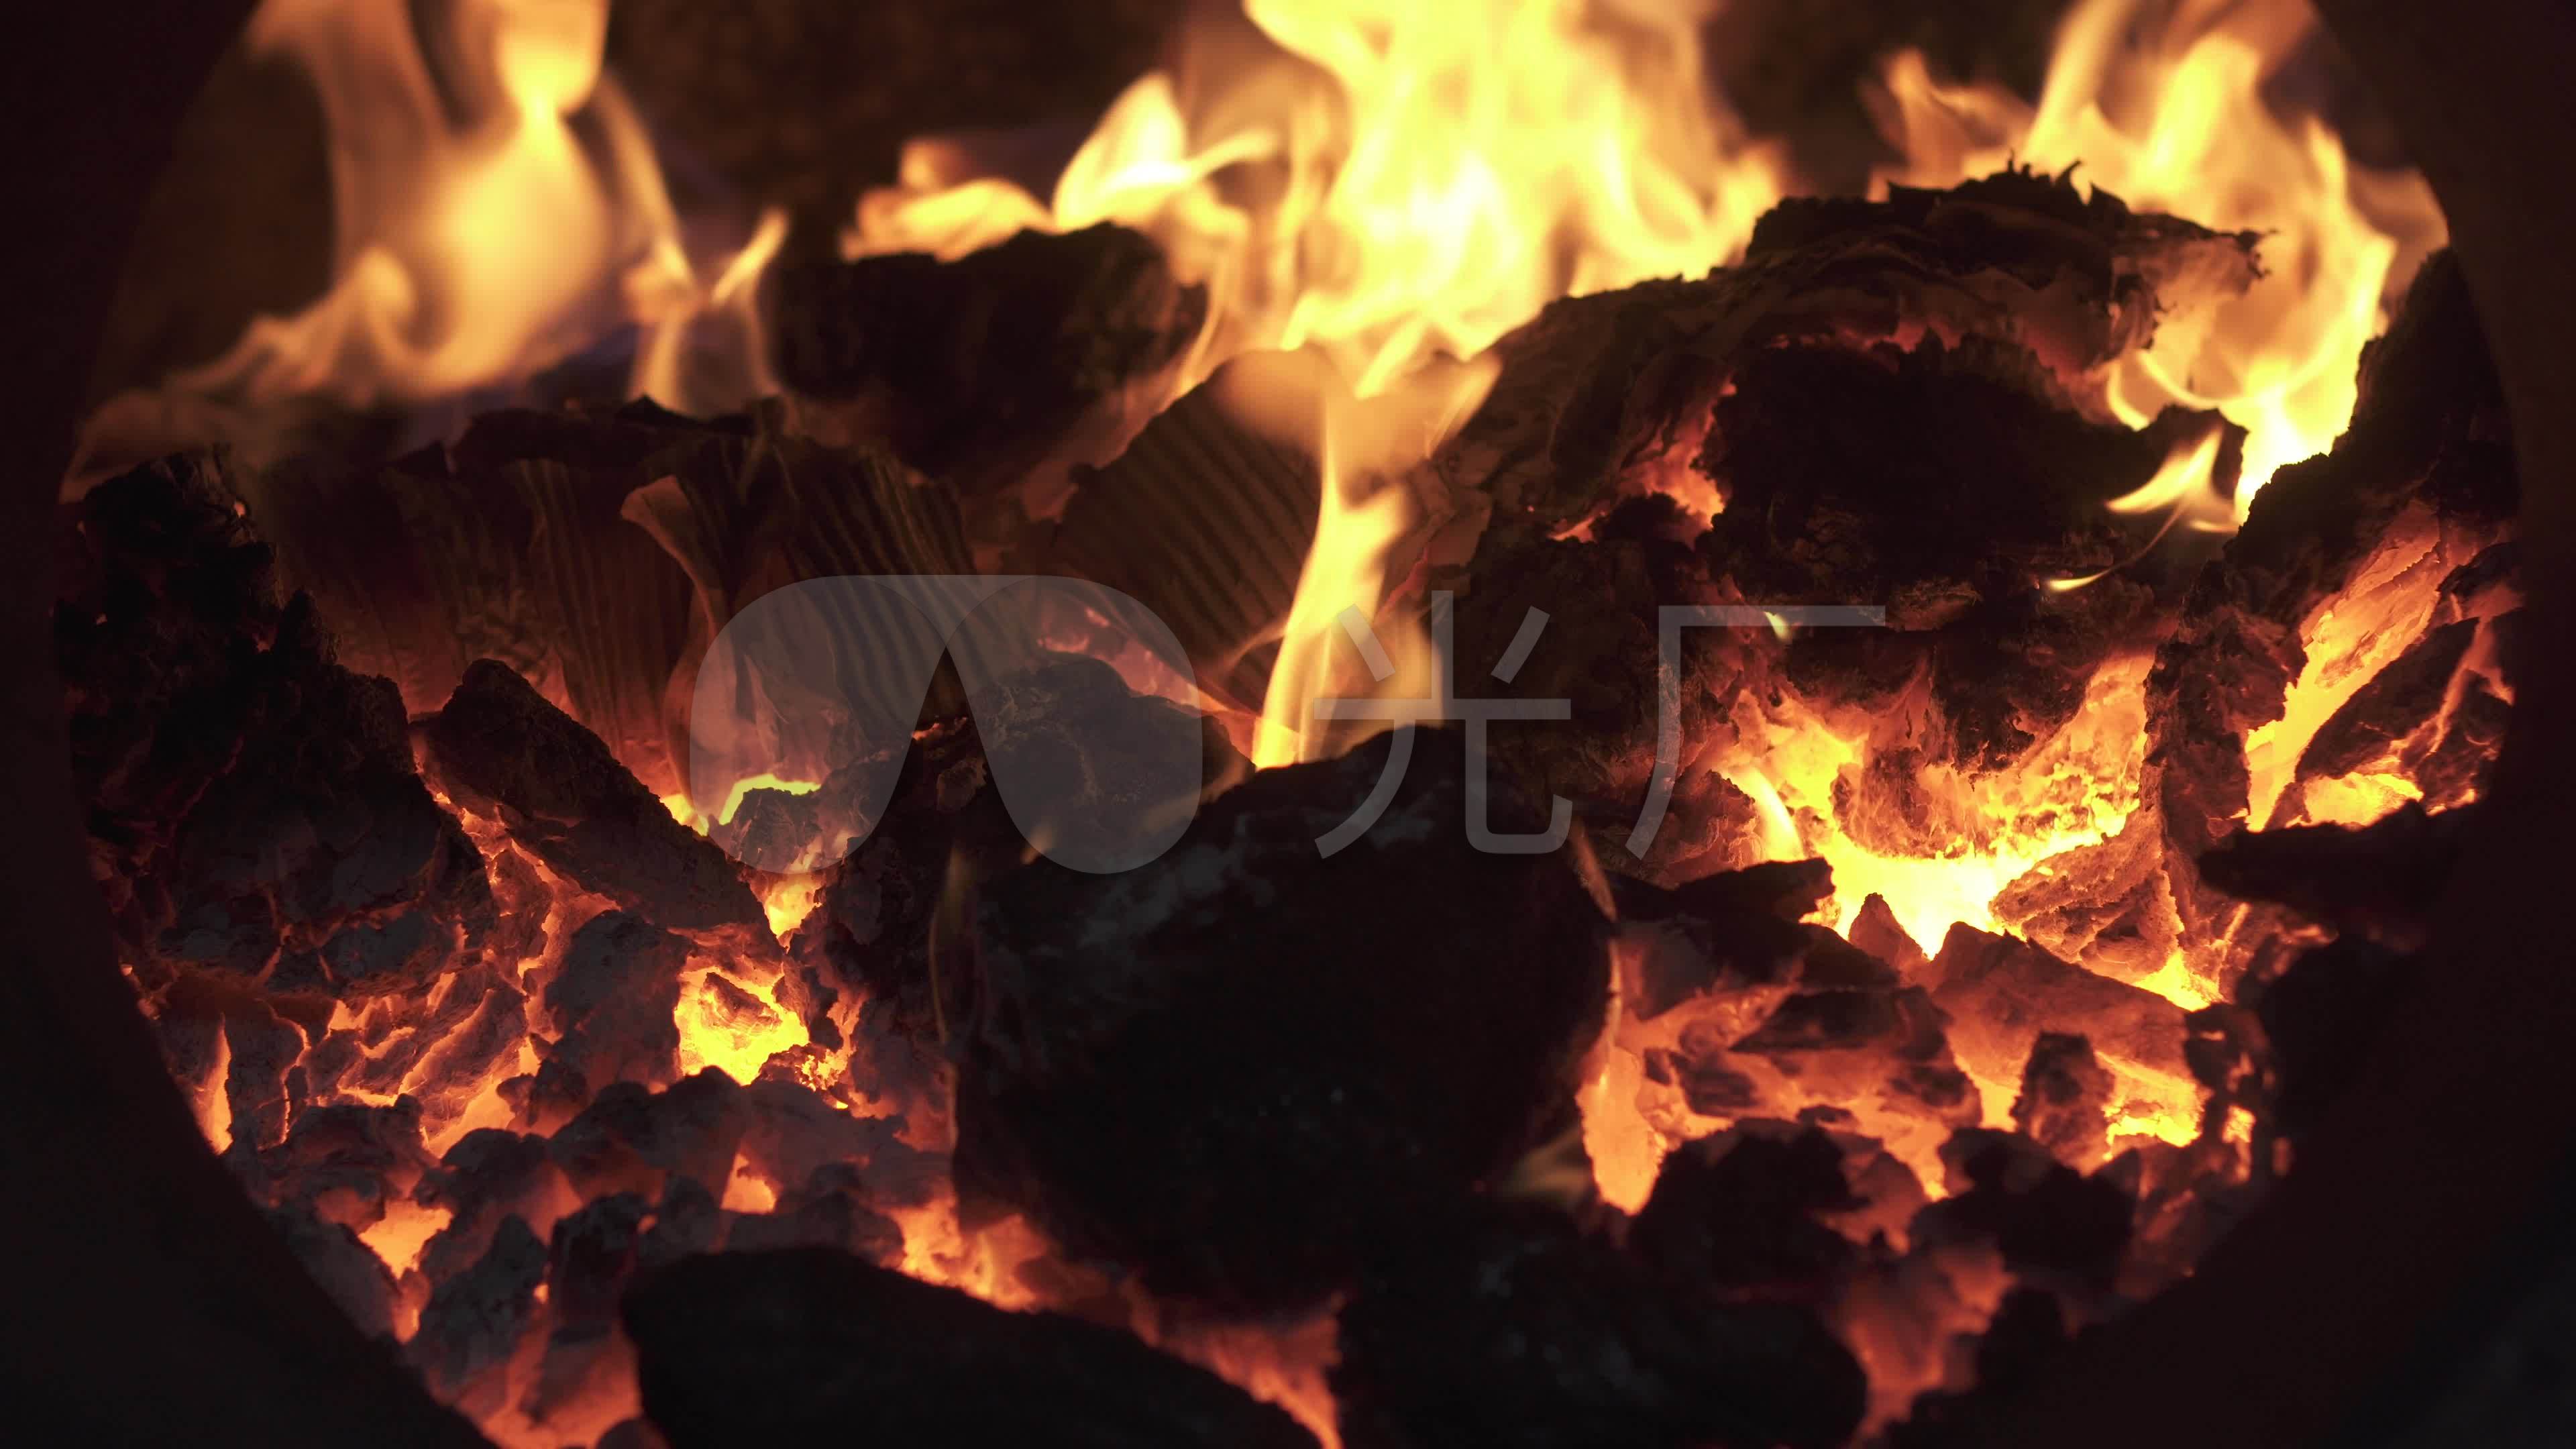 厂家直销农村家用柴火炉烤火炉回风铁片炉子江湖热销产品媒灶-阿里巴巴